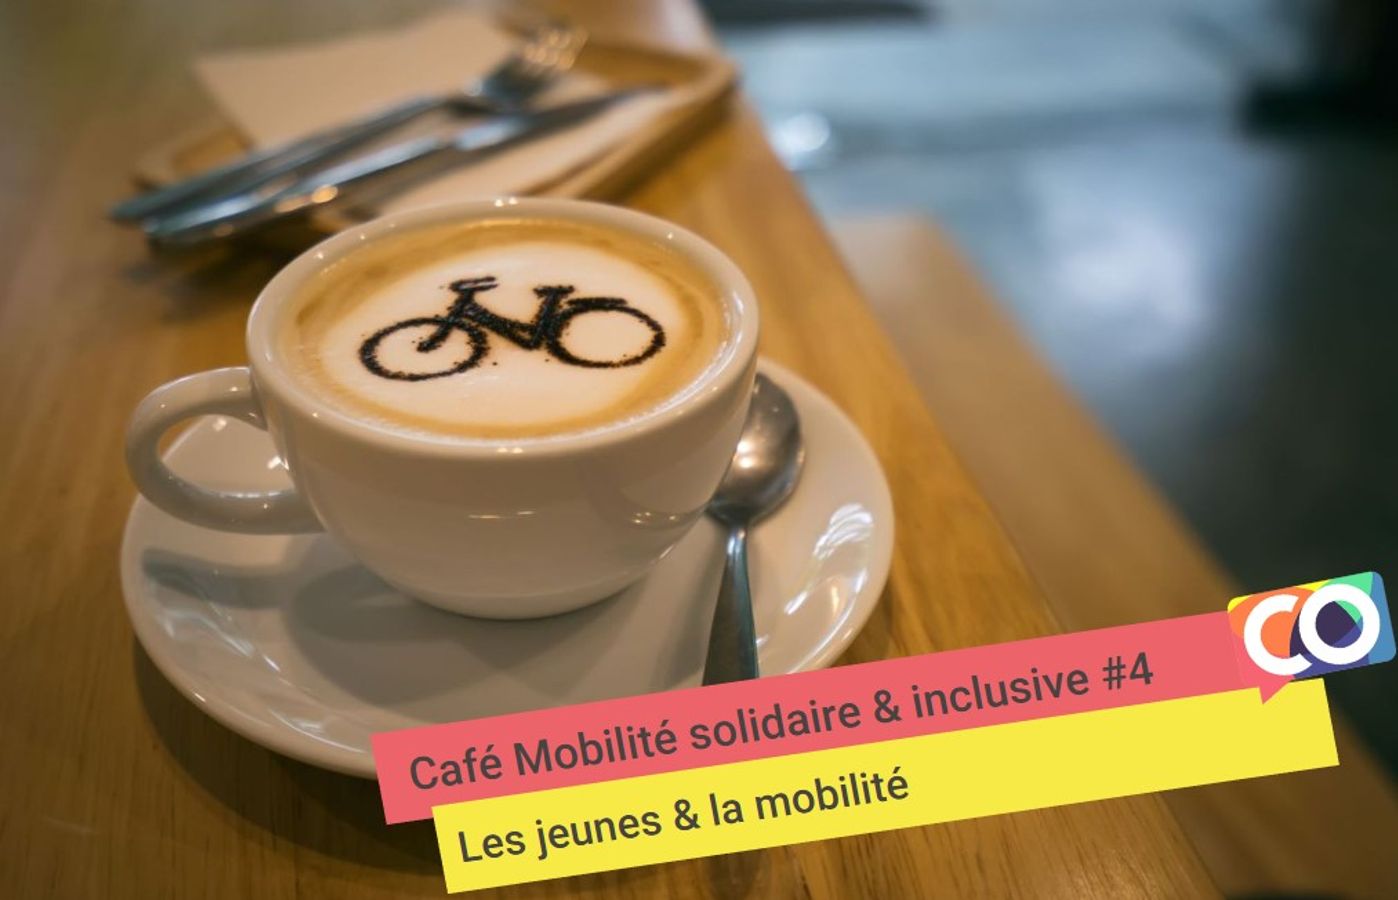 🗣 Café mobilité solidaire & inclusive: Mobilité des jeunes